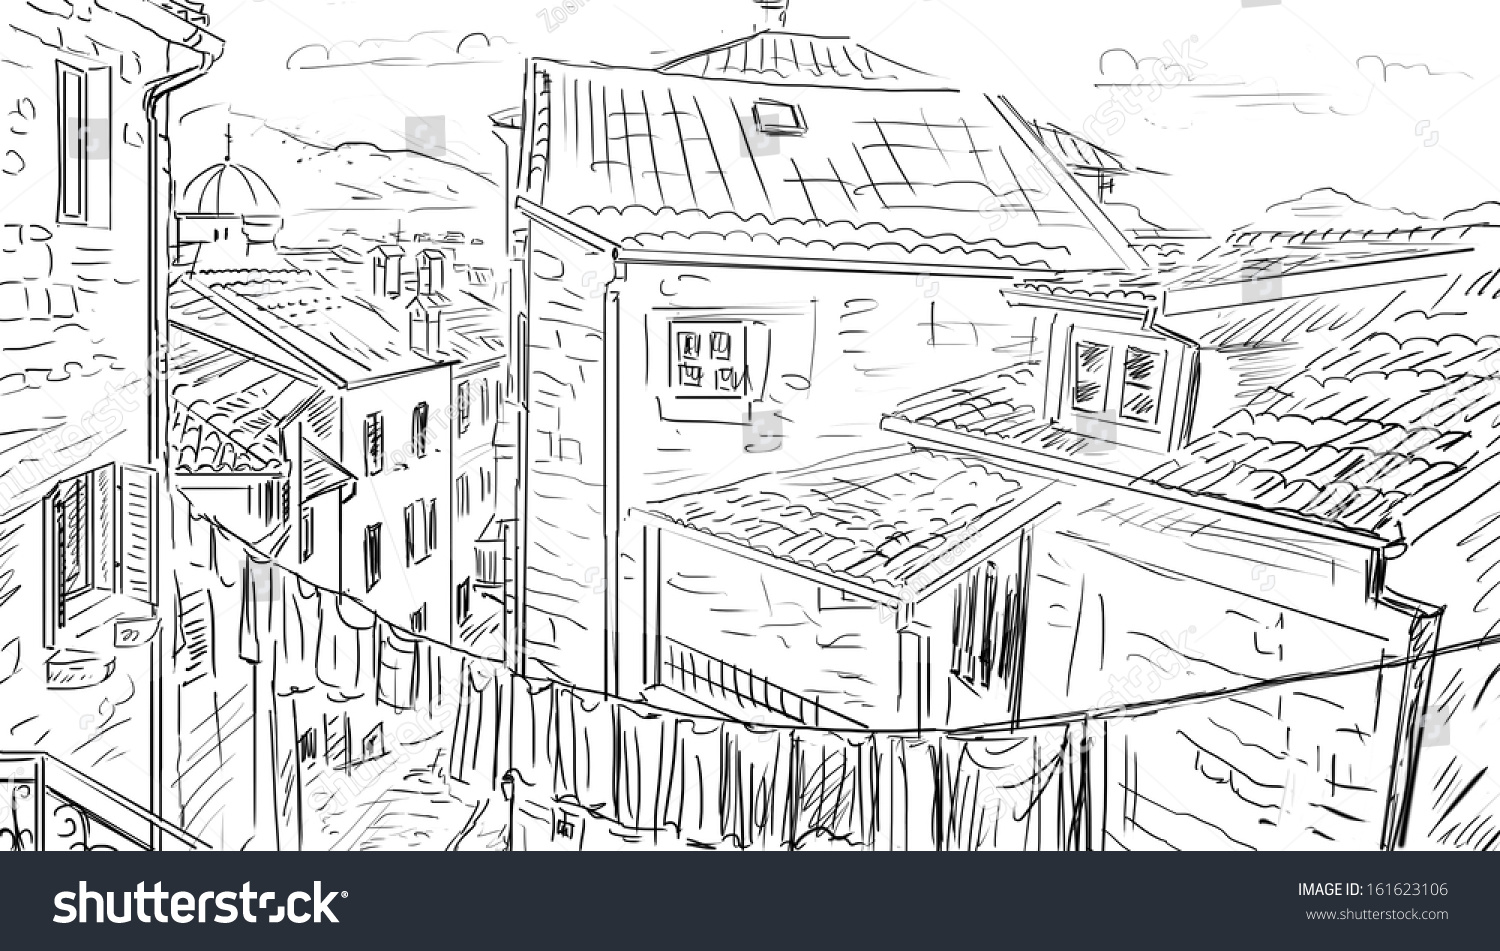 Street Roma Sketch Illustration Stock Illustration 161623106 - Shutterstock